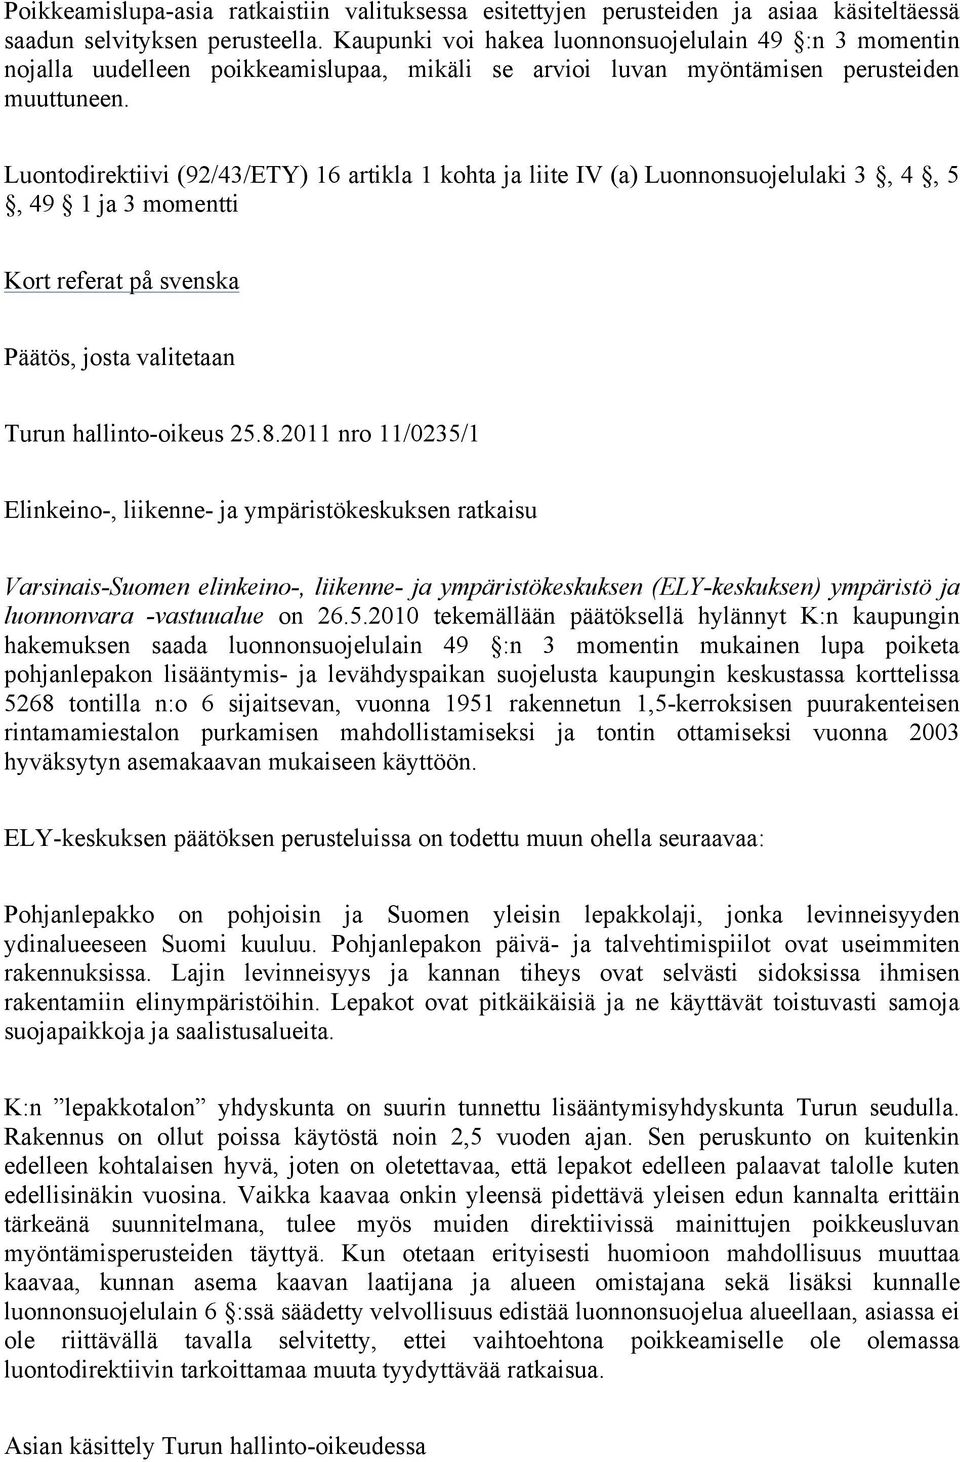 Luontodirektiivi (92/43/ETY) 16 artikla 1 kohta ja liite IV (a) Luonnonsuojelulaki 3, 4, 5, 49 1 ja 3 momentti Kort referat på svenska Päätös, josta valitetaan Turun hallinto-oikeus 25.8.